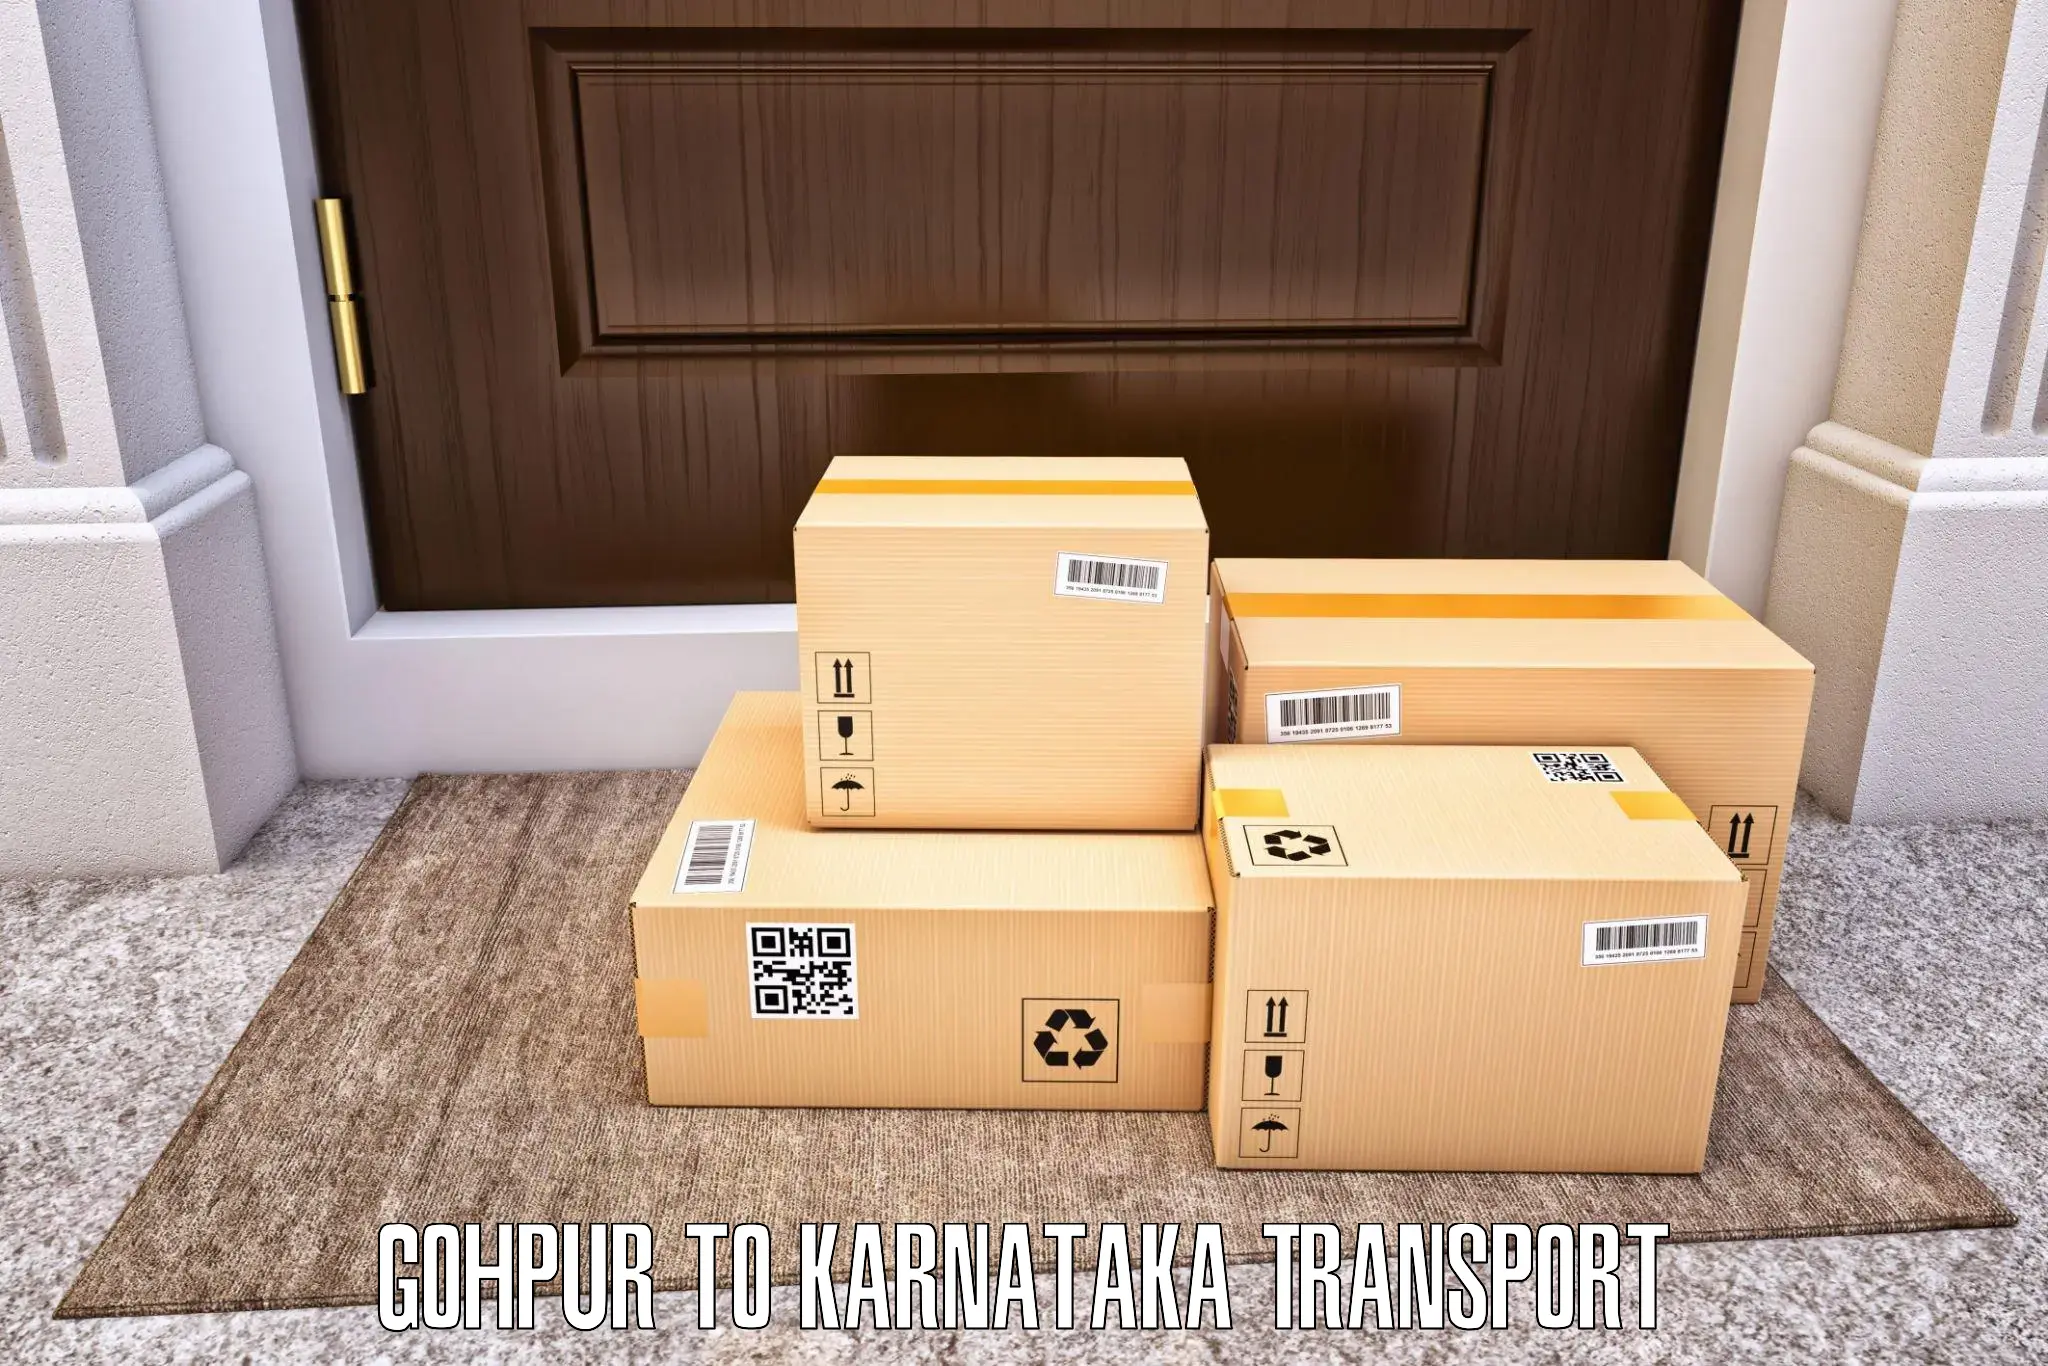 Shipping partner Gohpur to Kalasa